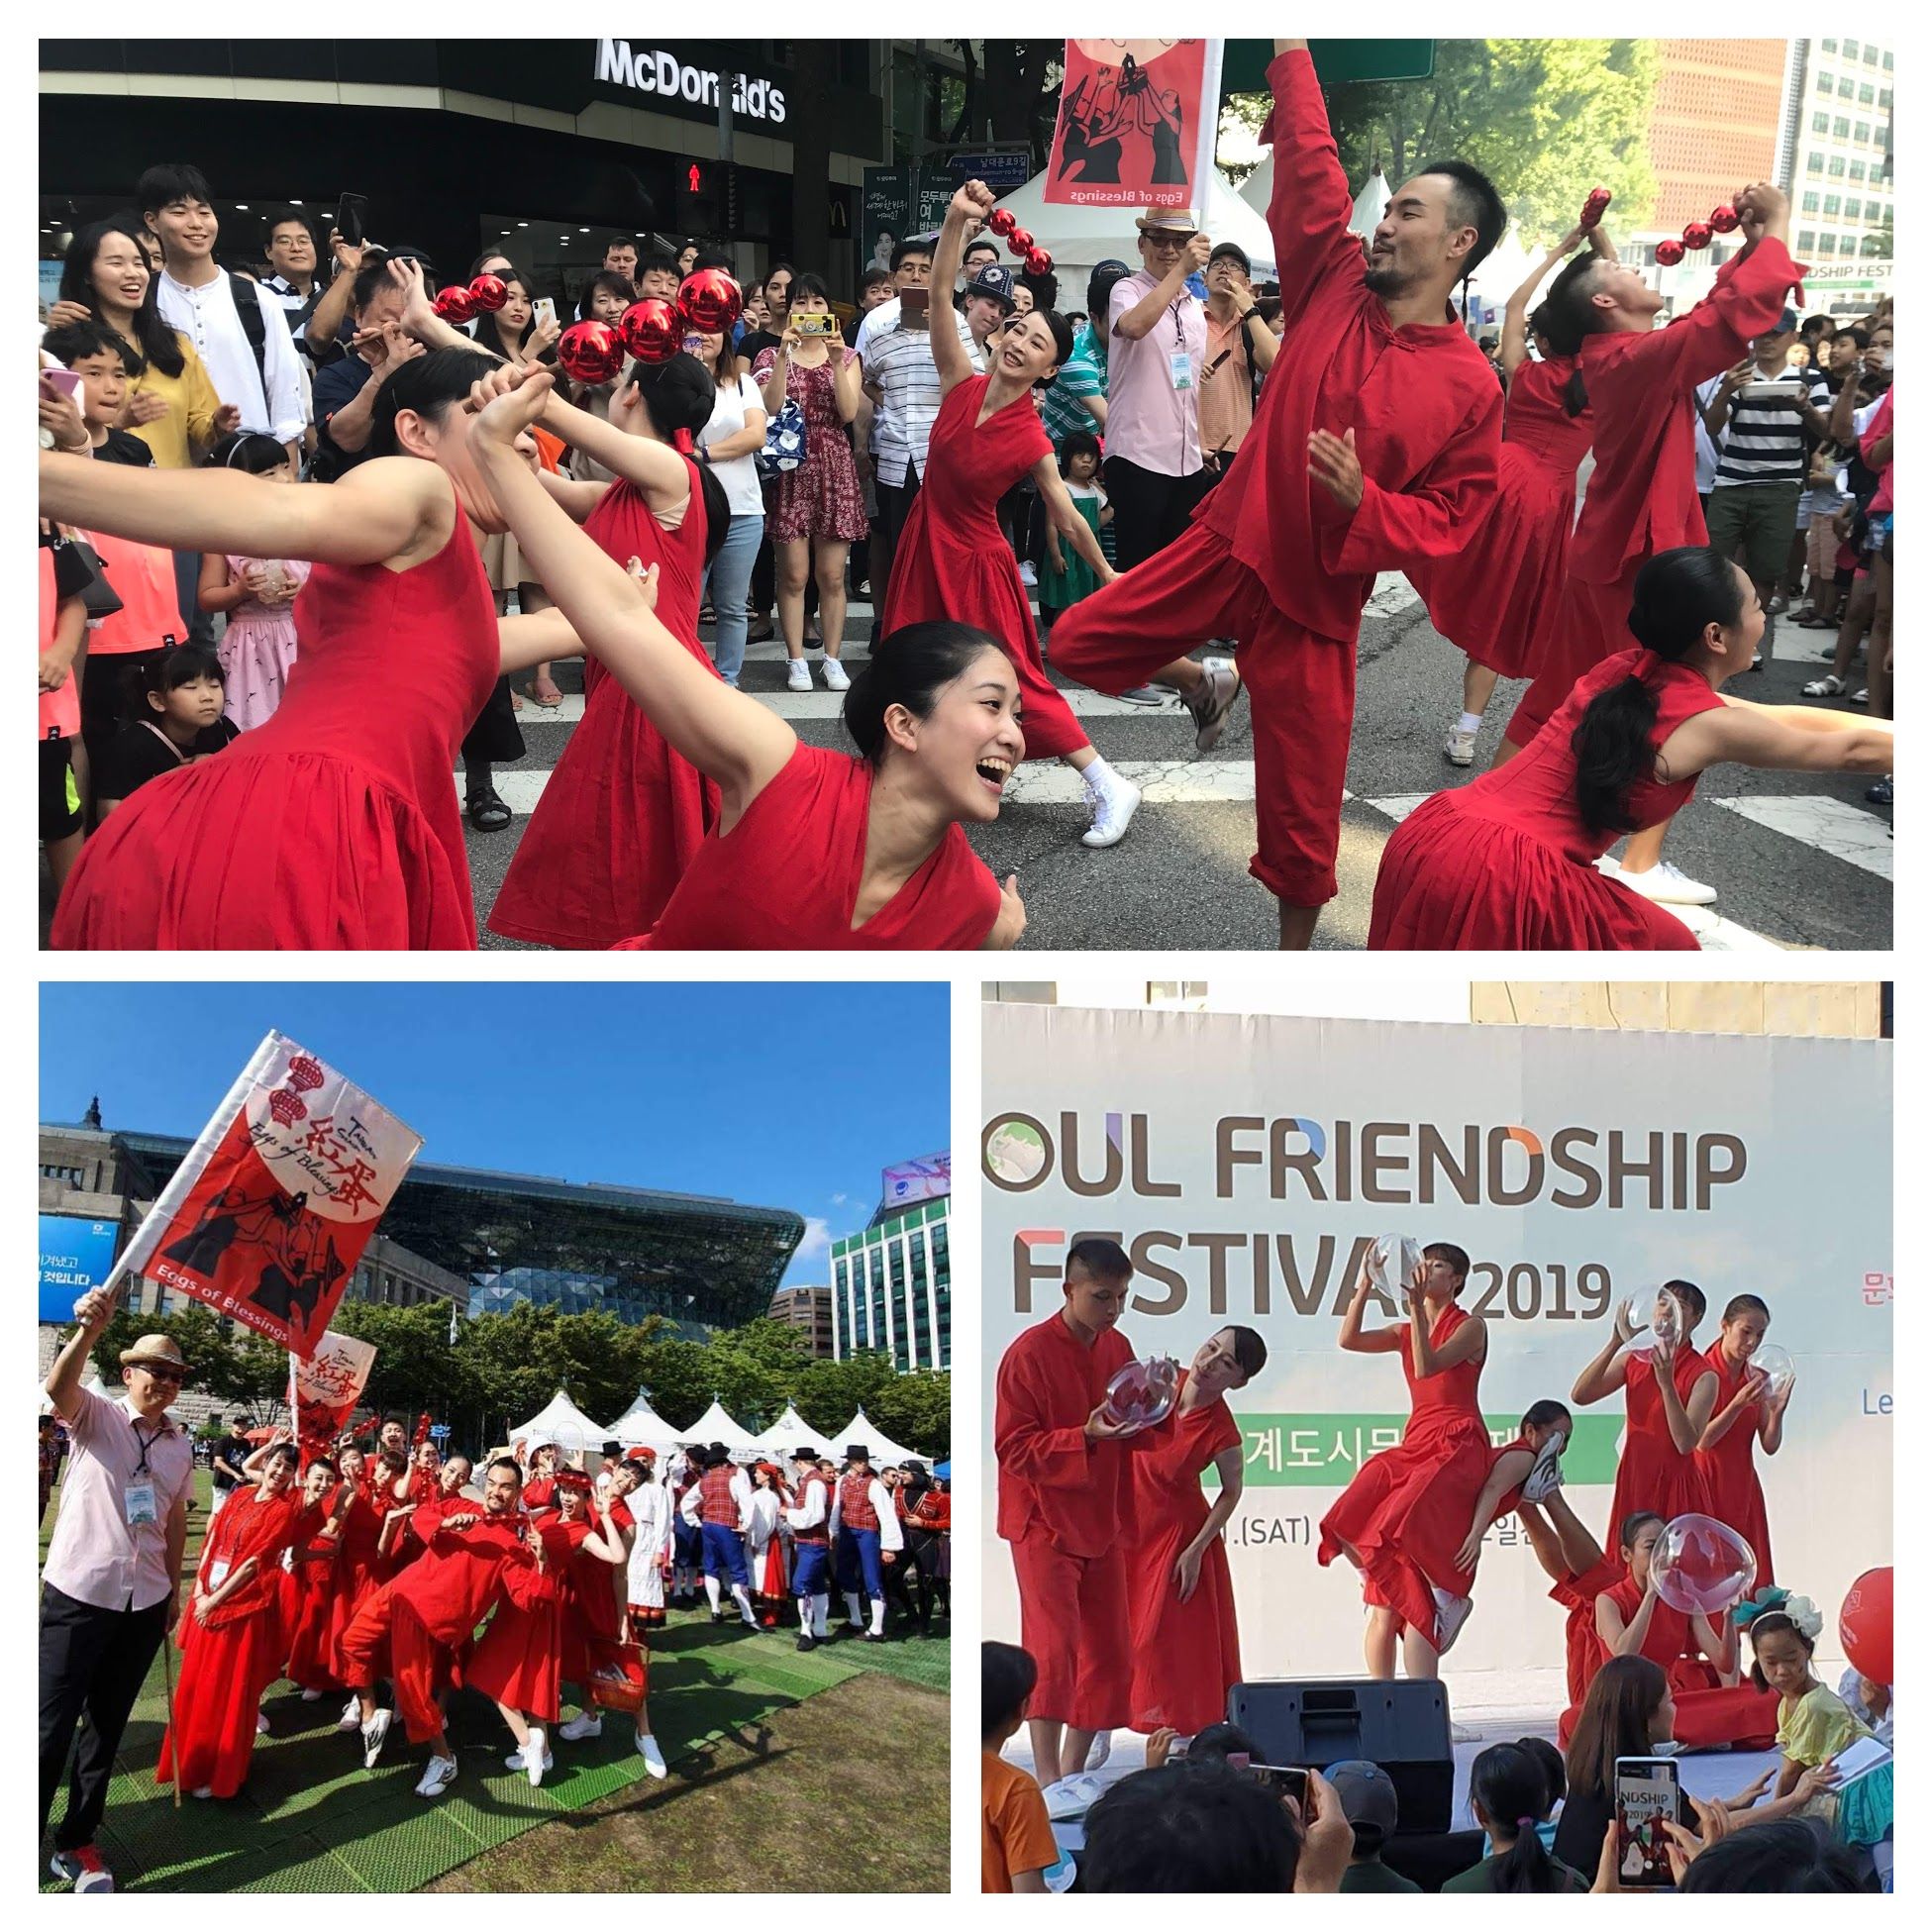 台北市傑出演藝團隊《玉舞蹈劇場》，在文化局推薦與補助下，今年以作品《紅蛋》代表台北市參與「2019首爾友誼節」活動，亮眼行銷台北城市魅力及藝術能量。